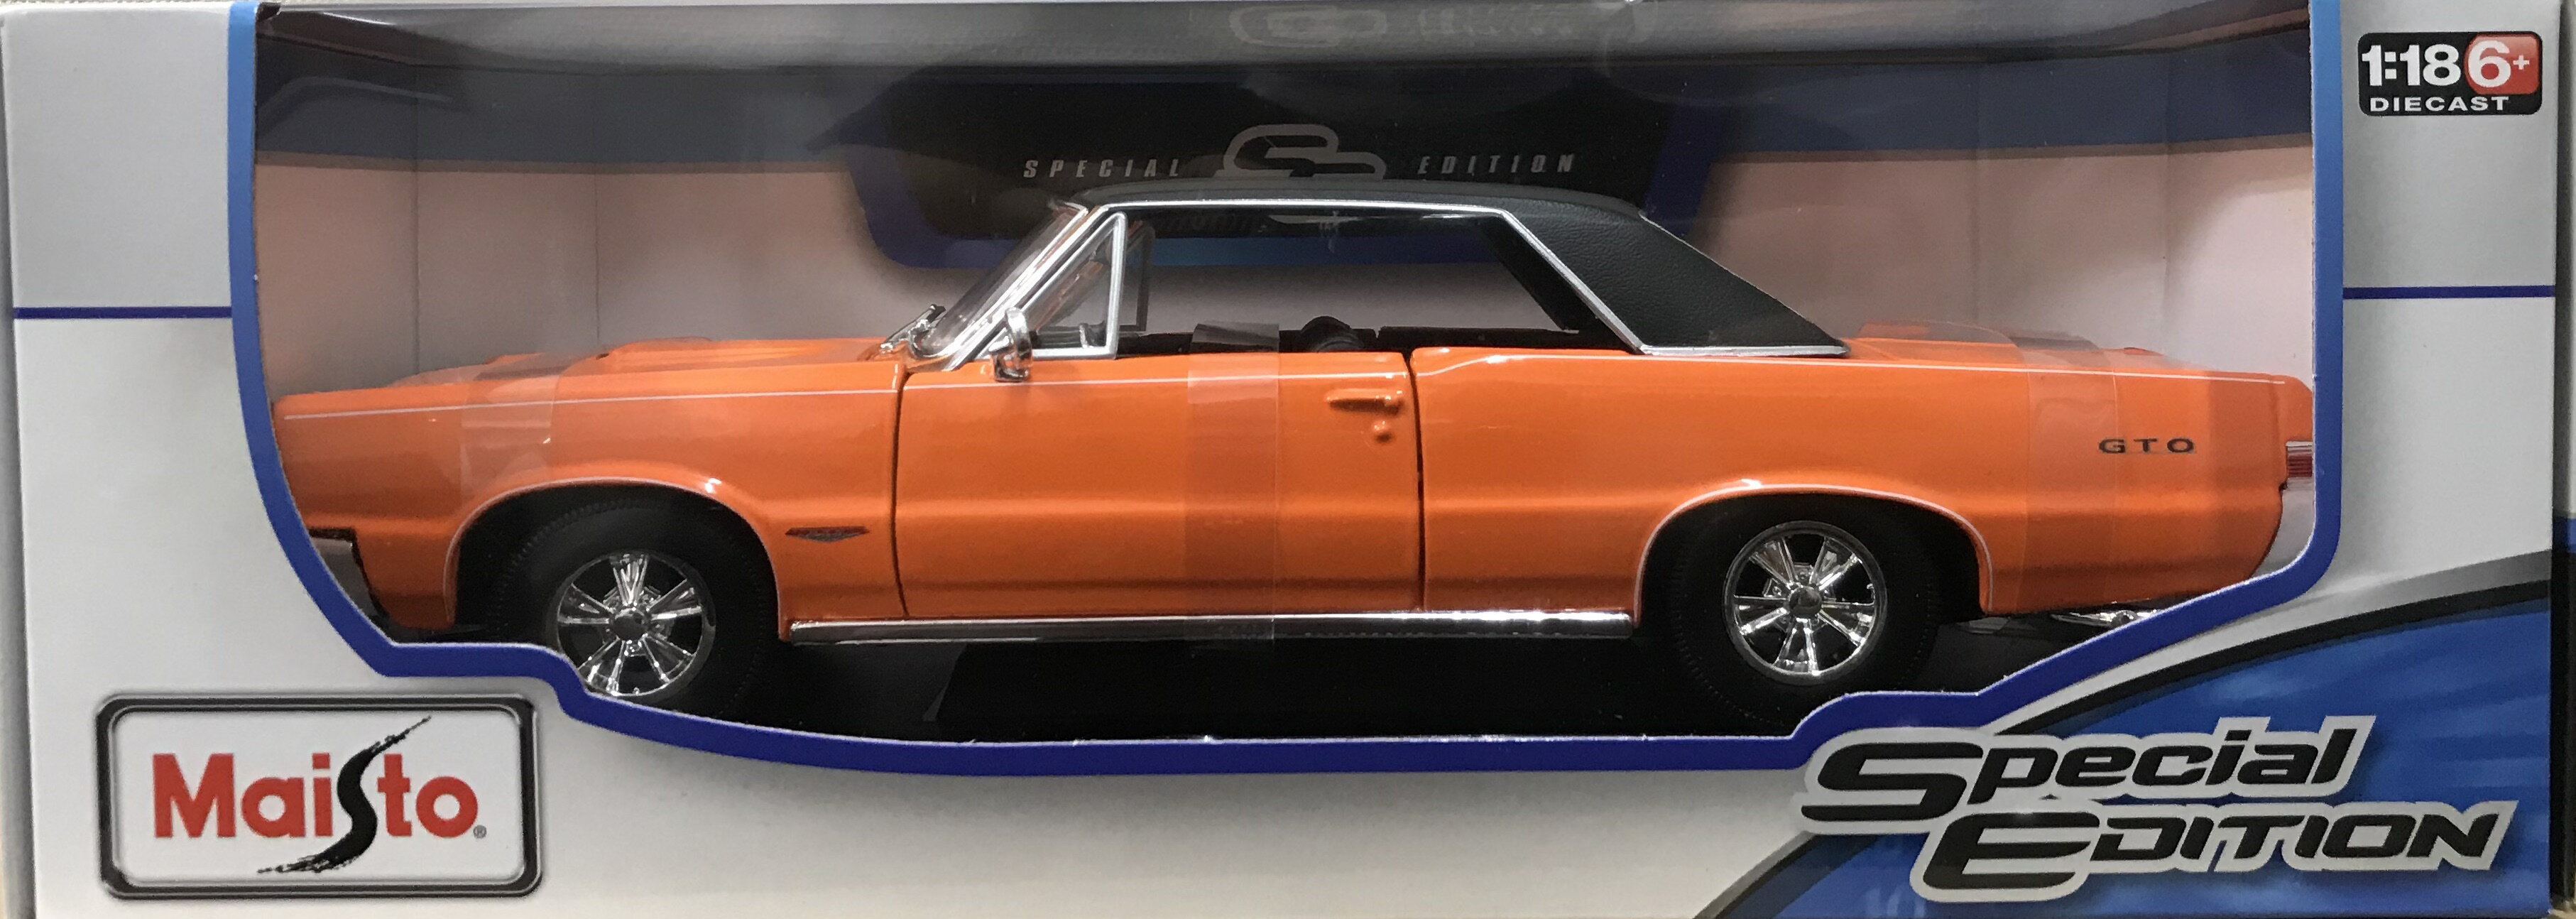 Maisto (マイスト) 1965 Pontiac GTO 1/18 オレンジ ポンティアック ミニカー